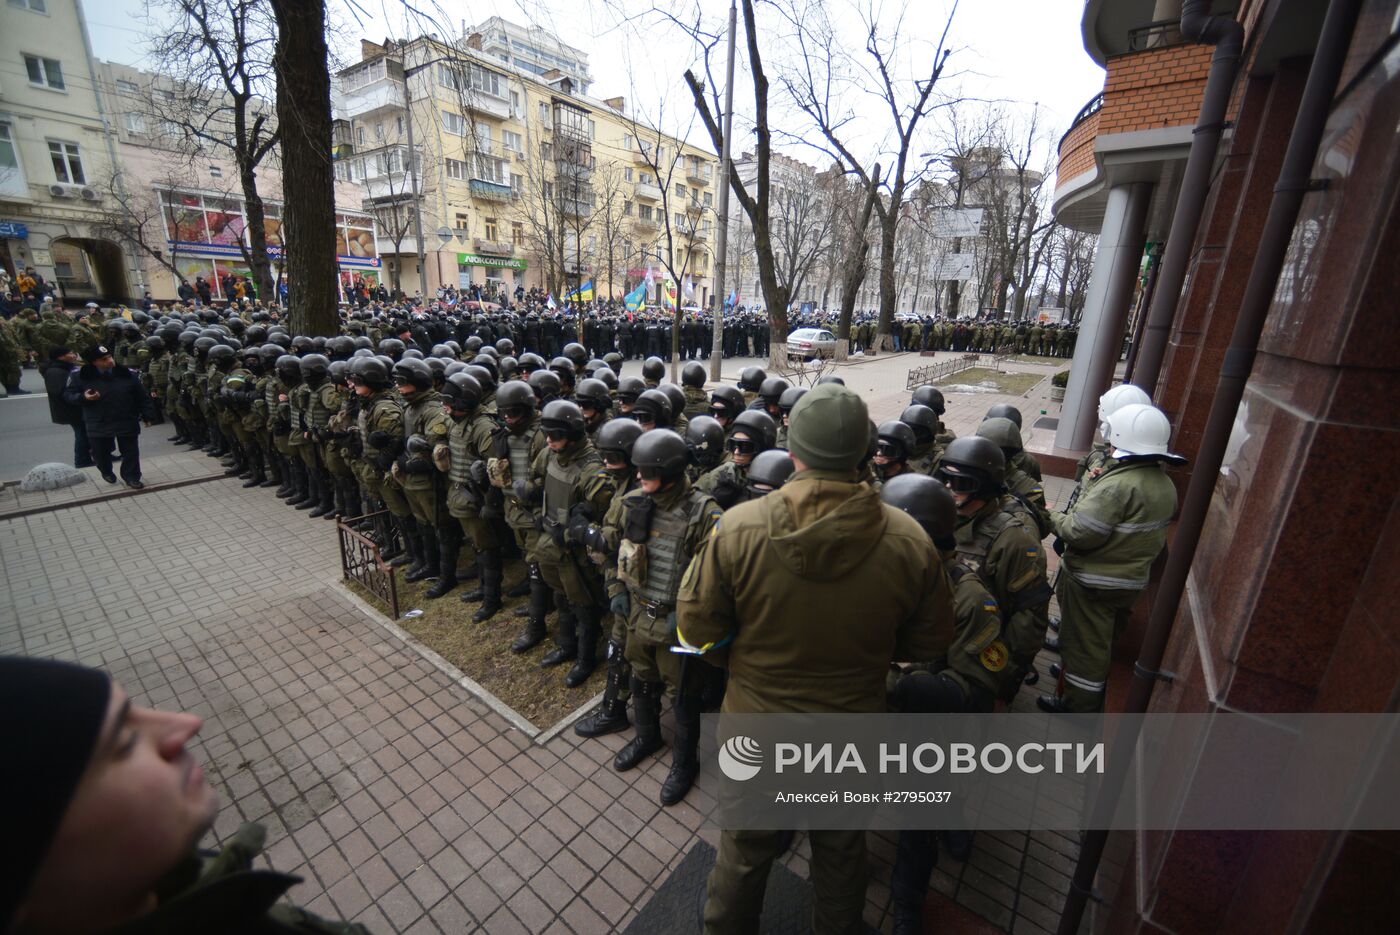 Радикалы в Киеве разгромили “Альфа-банк” и закидали камнями здание Сбербанка